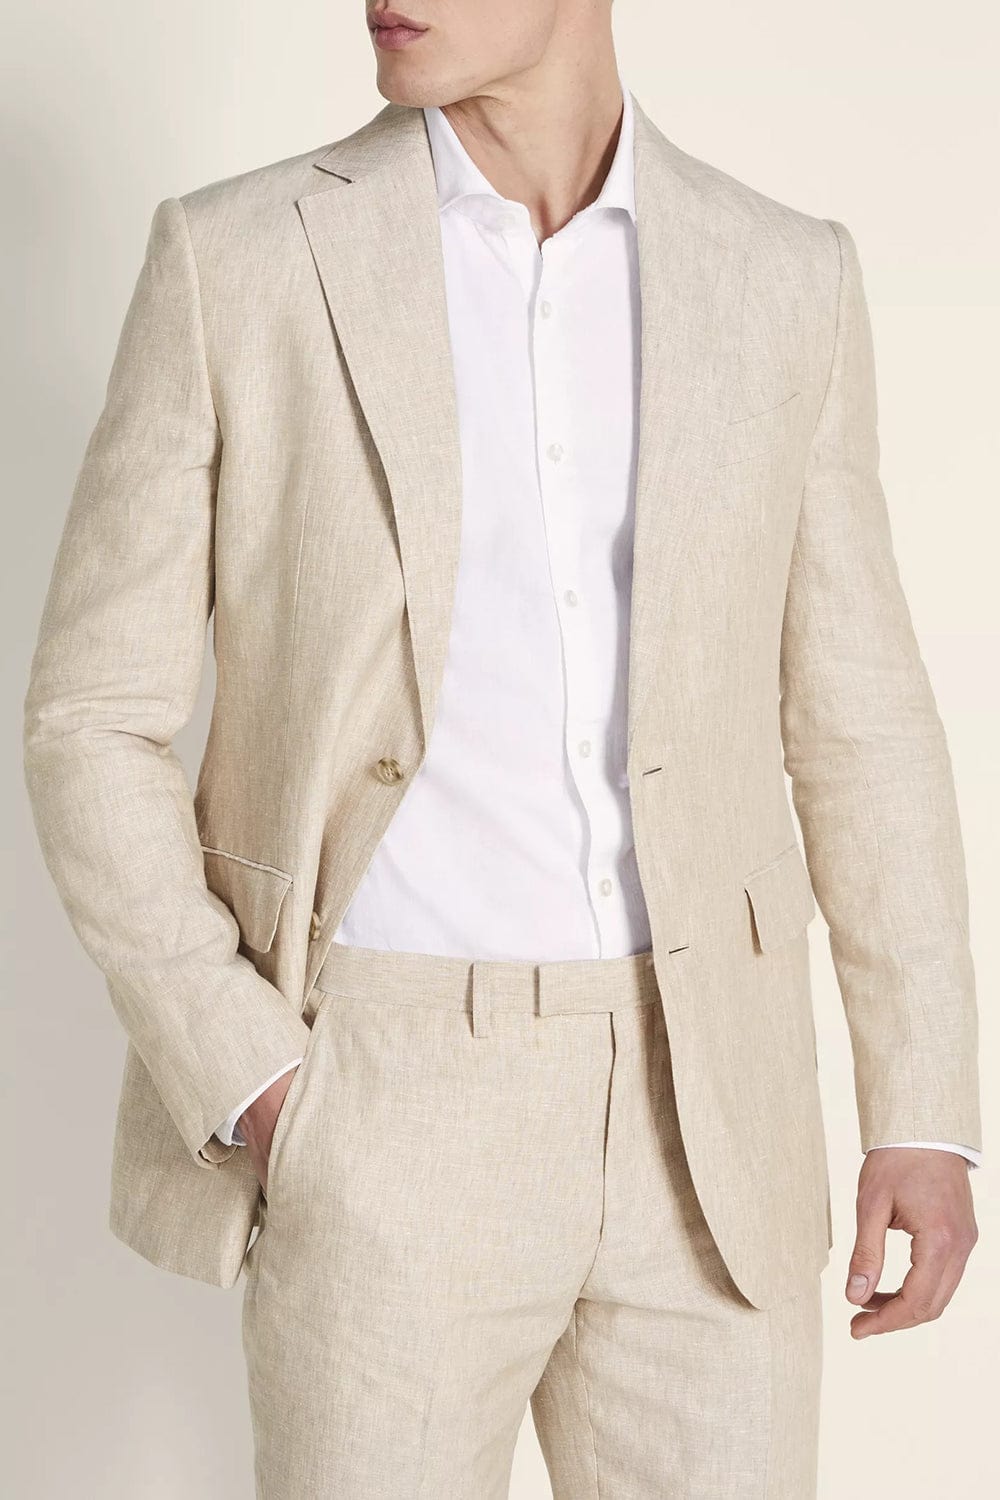 aesido Men's Suit 2 Pieces Business Casual Double Button Jacket (Blazer+Pants)